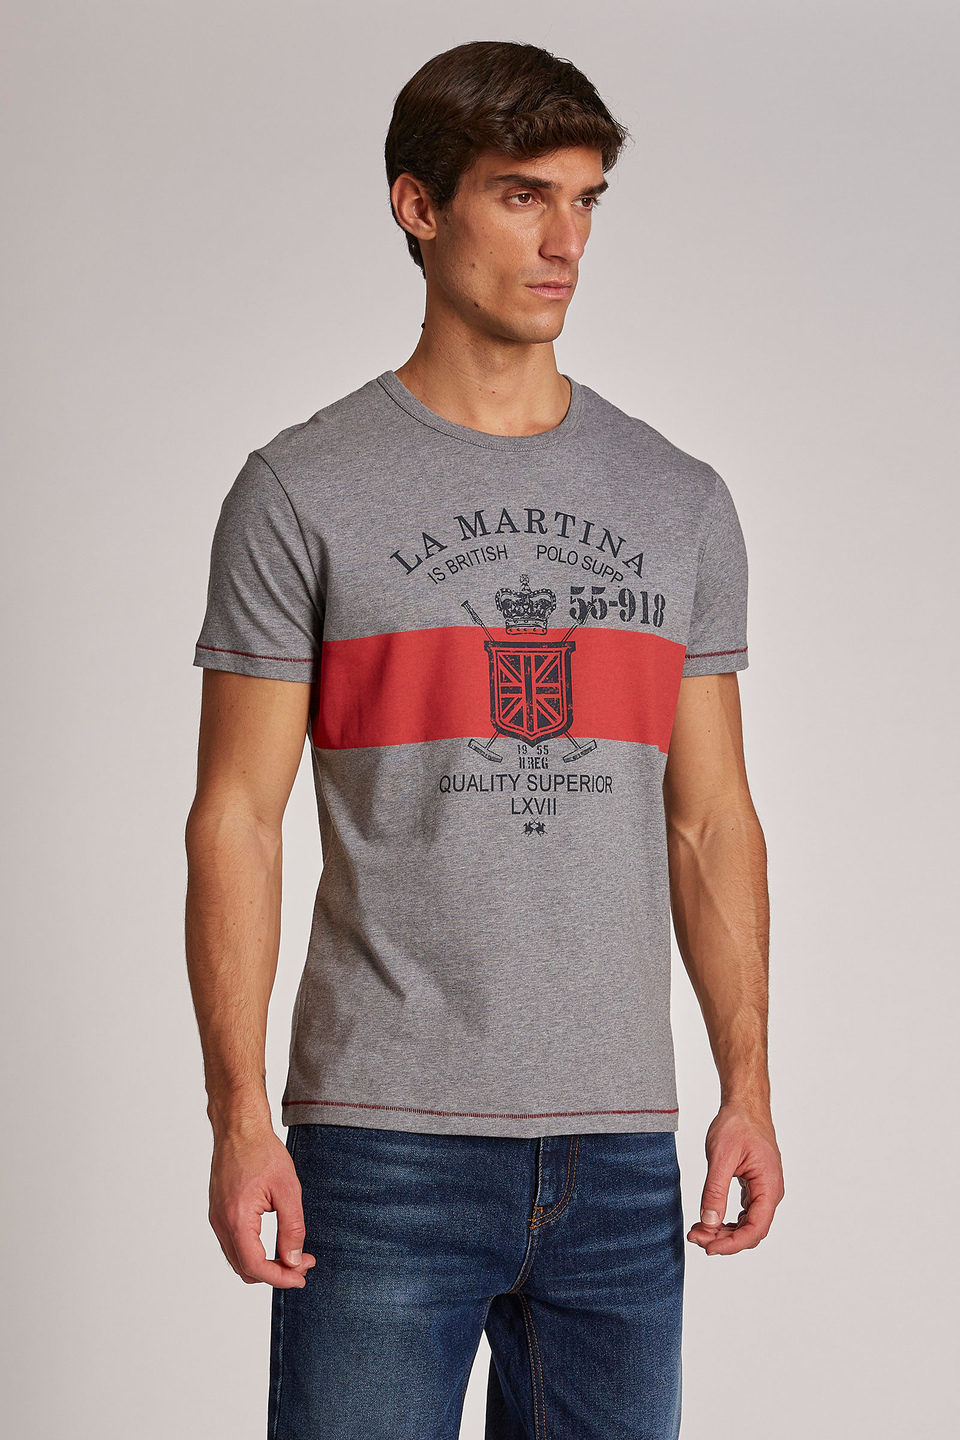 Camiseta de hombre de manga corta de algodón, corte regular - La Martina - Official Online Shop